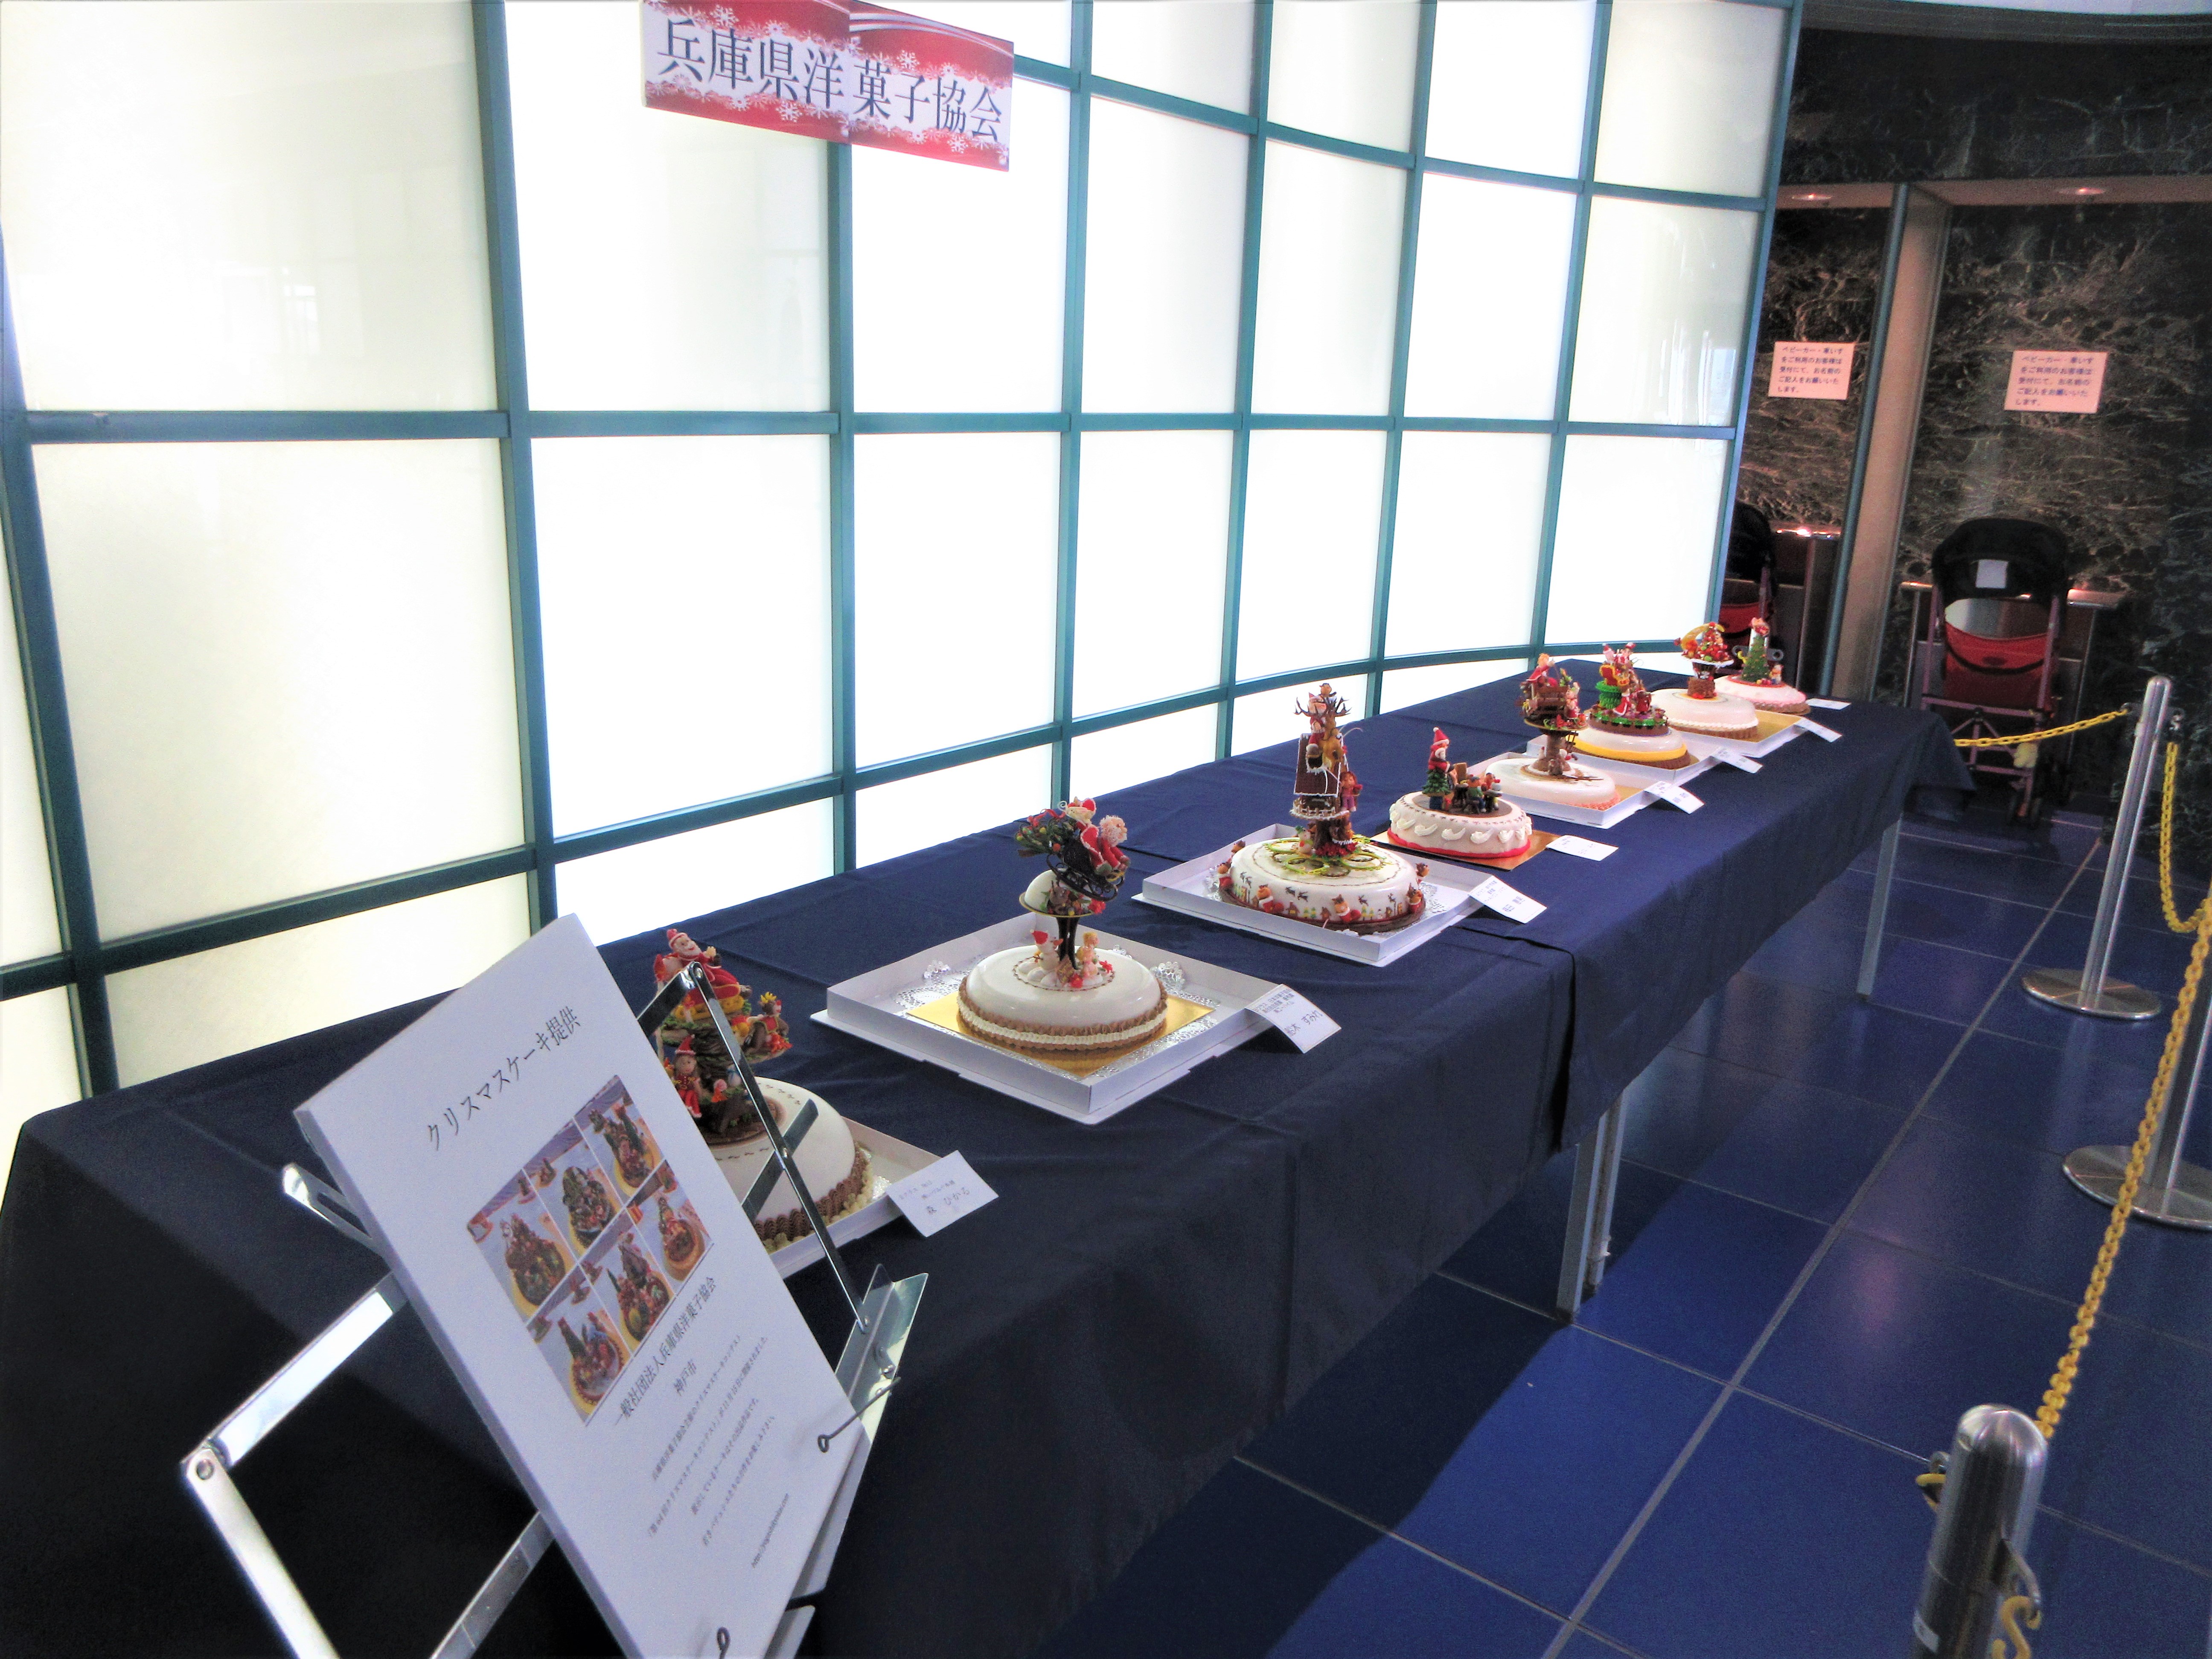 11月18日から「兵庫県洋菓子協会クリスマスコンテスト」作品展示のアイキャッチ